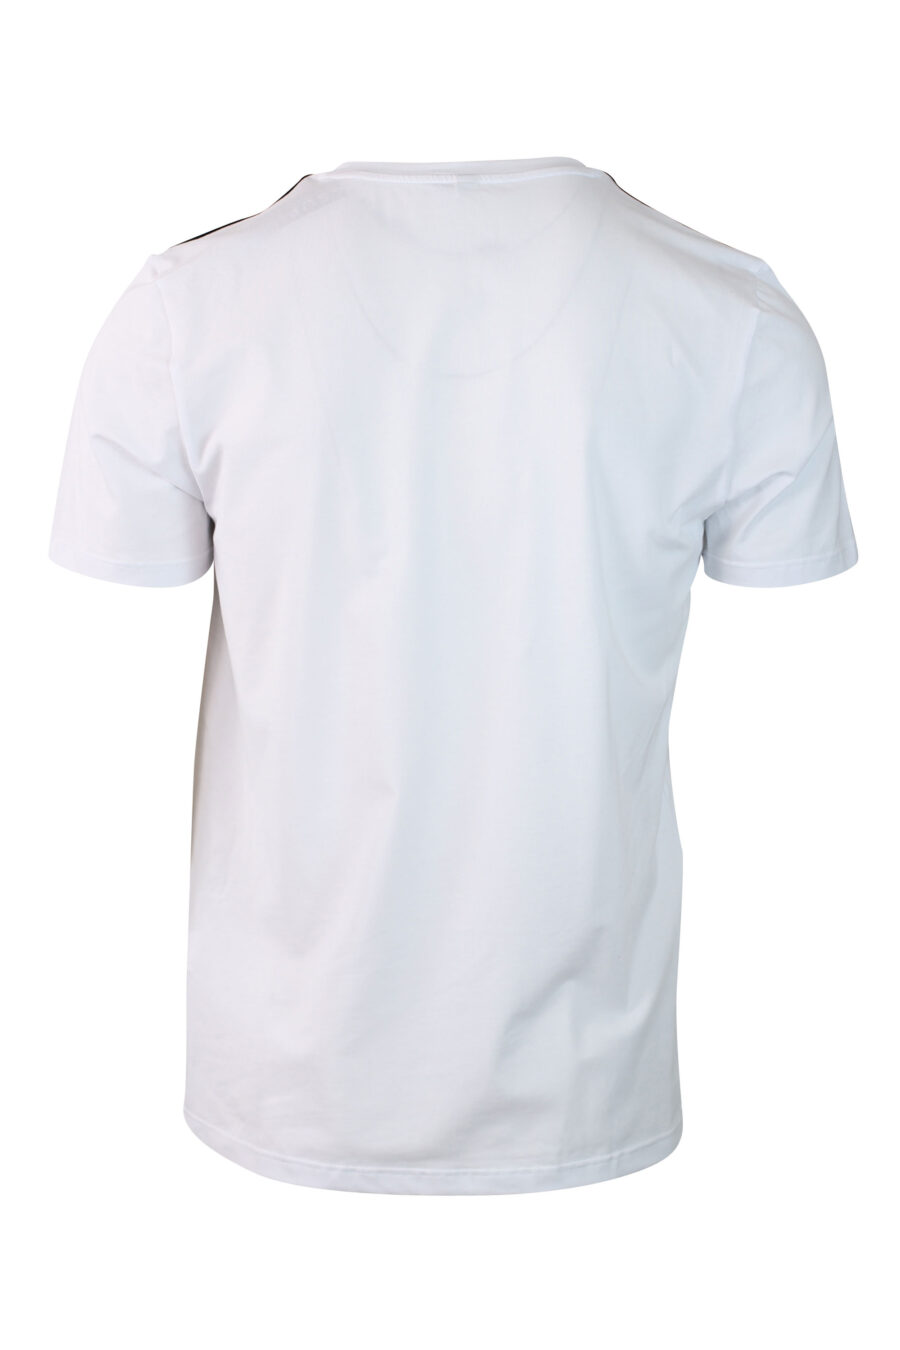 Pack de dos camisetas blancas con logo en banda en hombros - IMG 0133